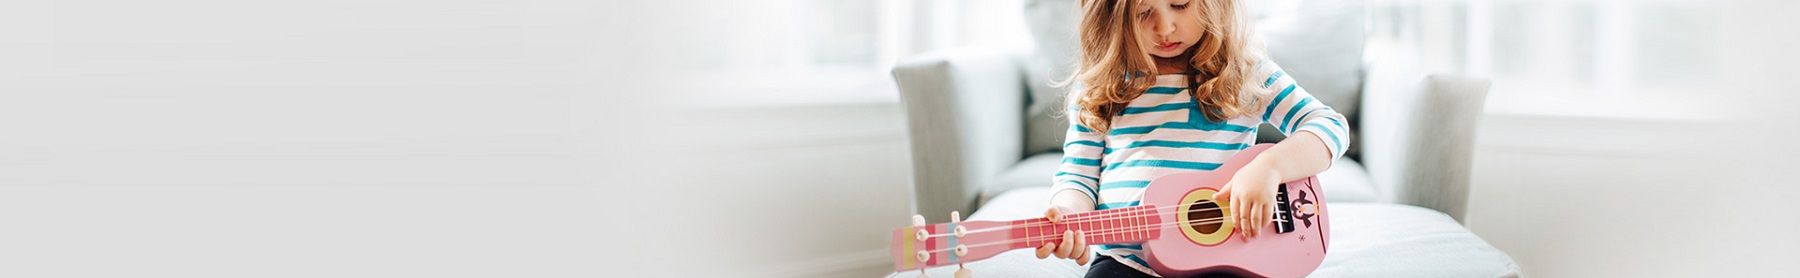 Dziewczynka grająca na różowej gitarze - Celowe plany oszczędnościowe